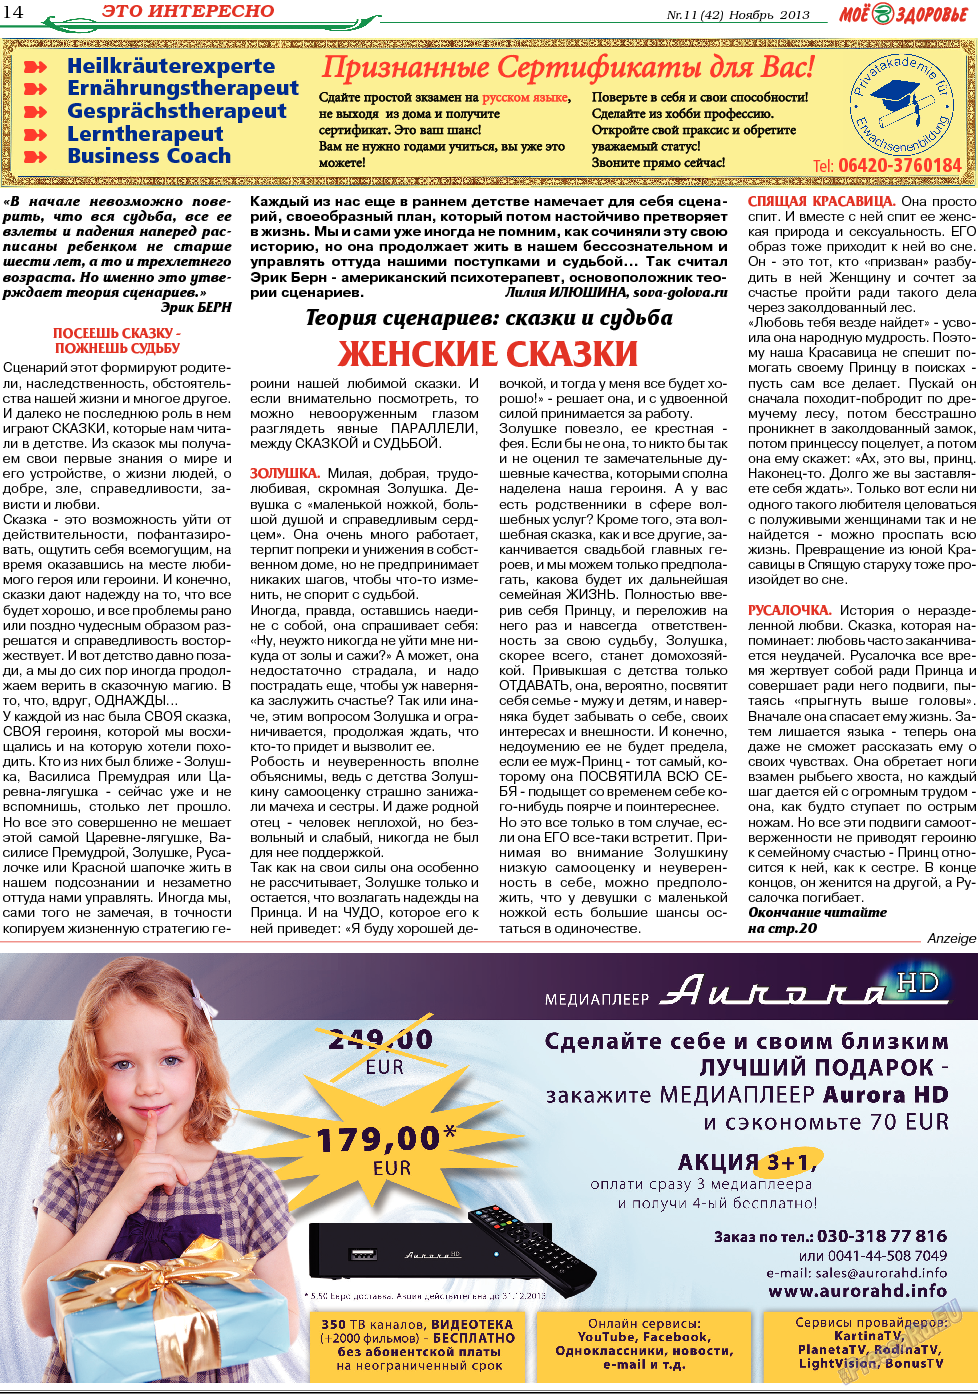 Кругозор, газета. 2013 №11 стр.14